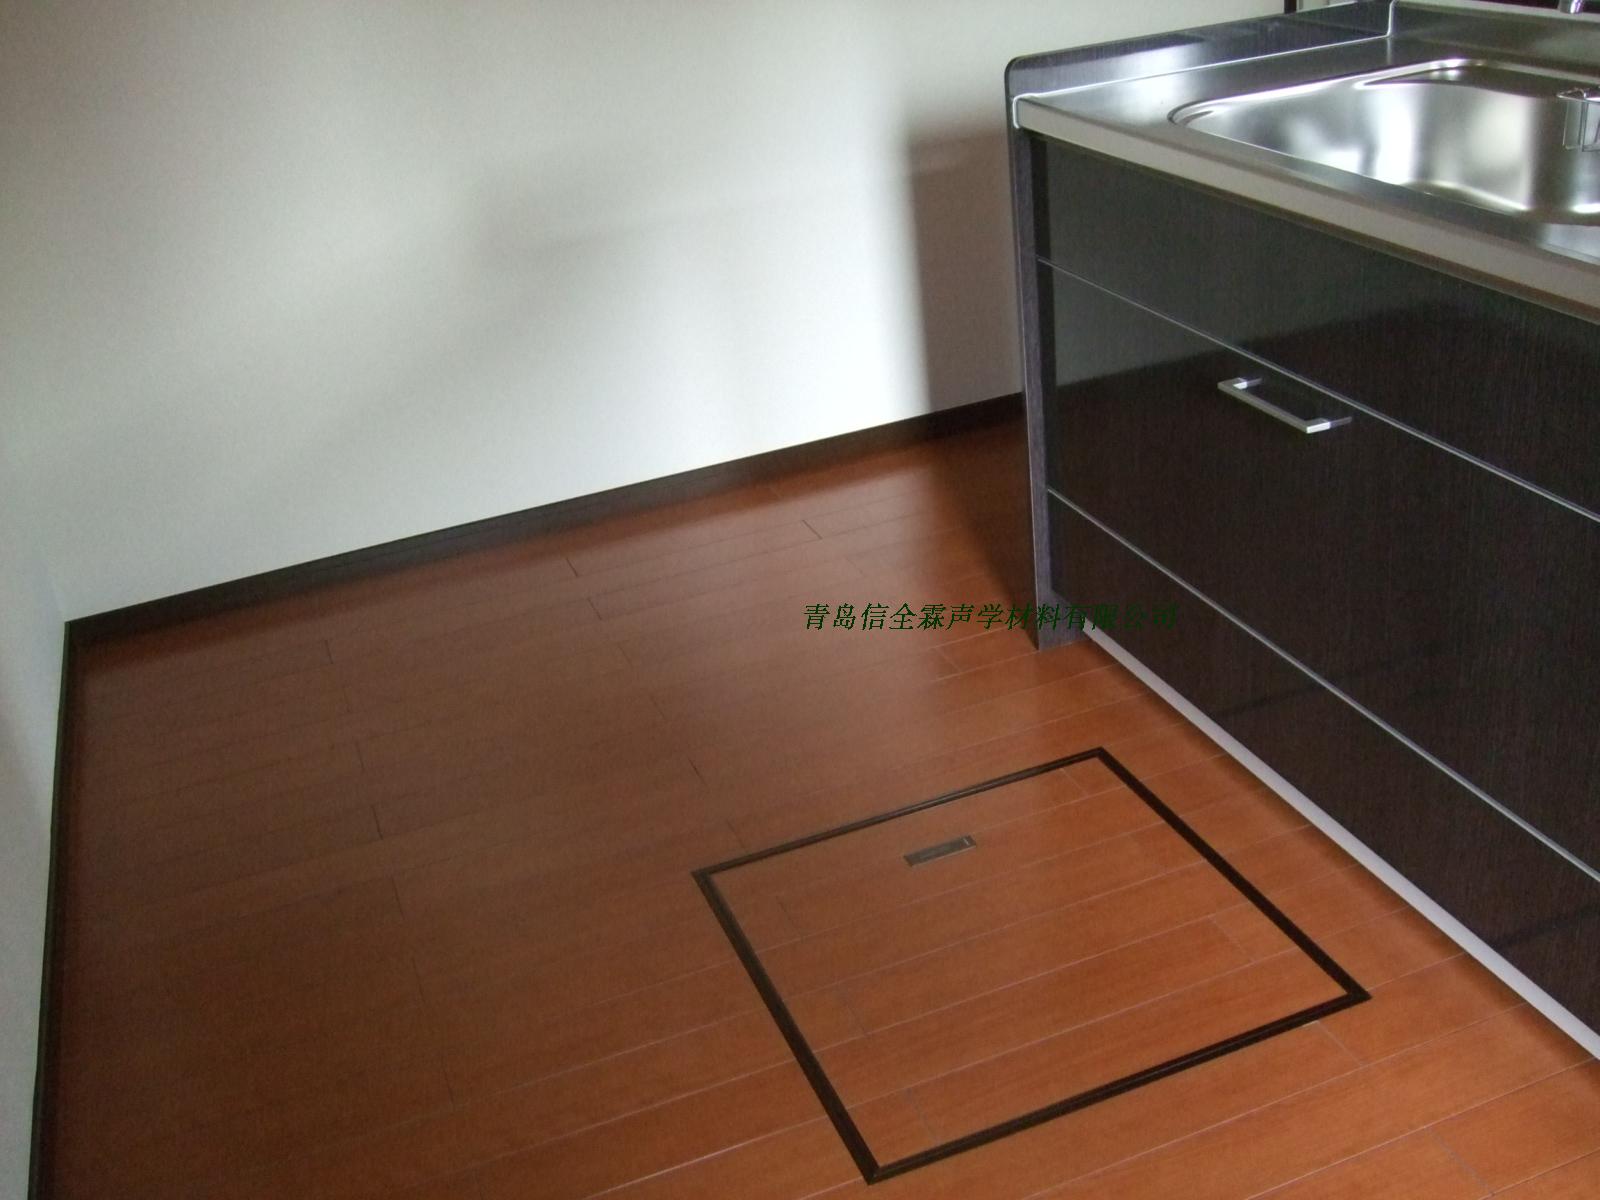 日本进口 3mm 4mmPVC地板 商场家庭卧室办公室pvc地板 防水 防滑